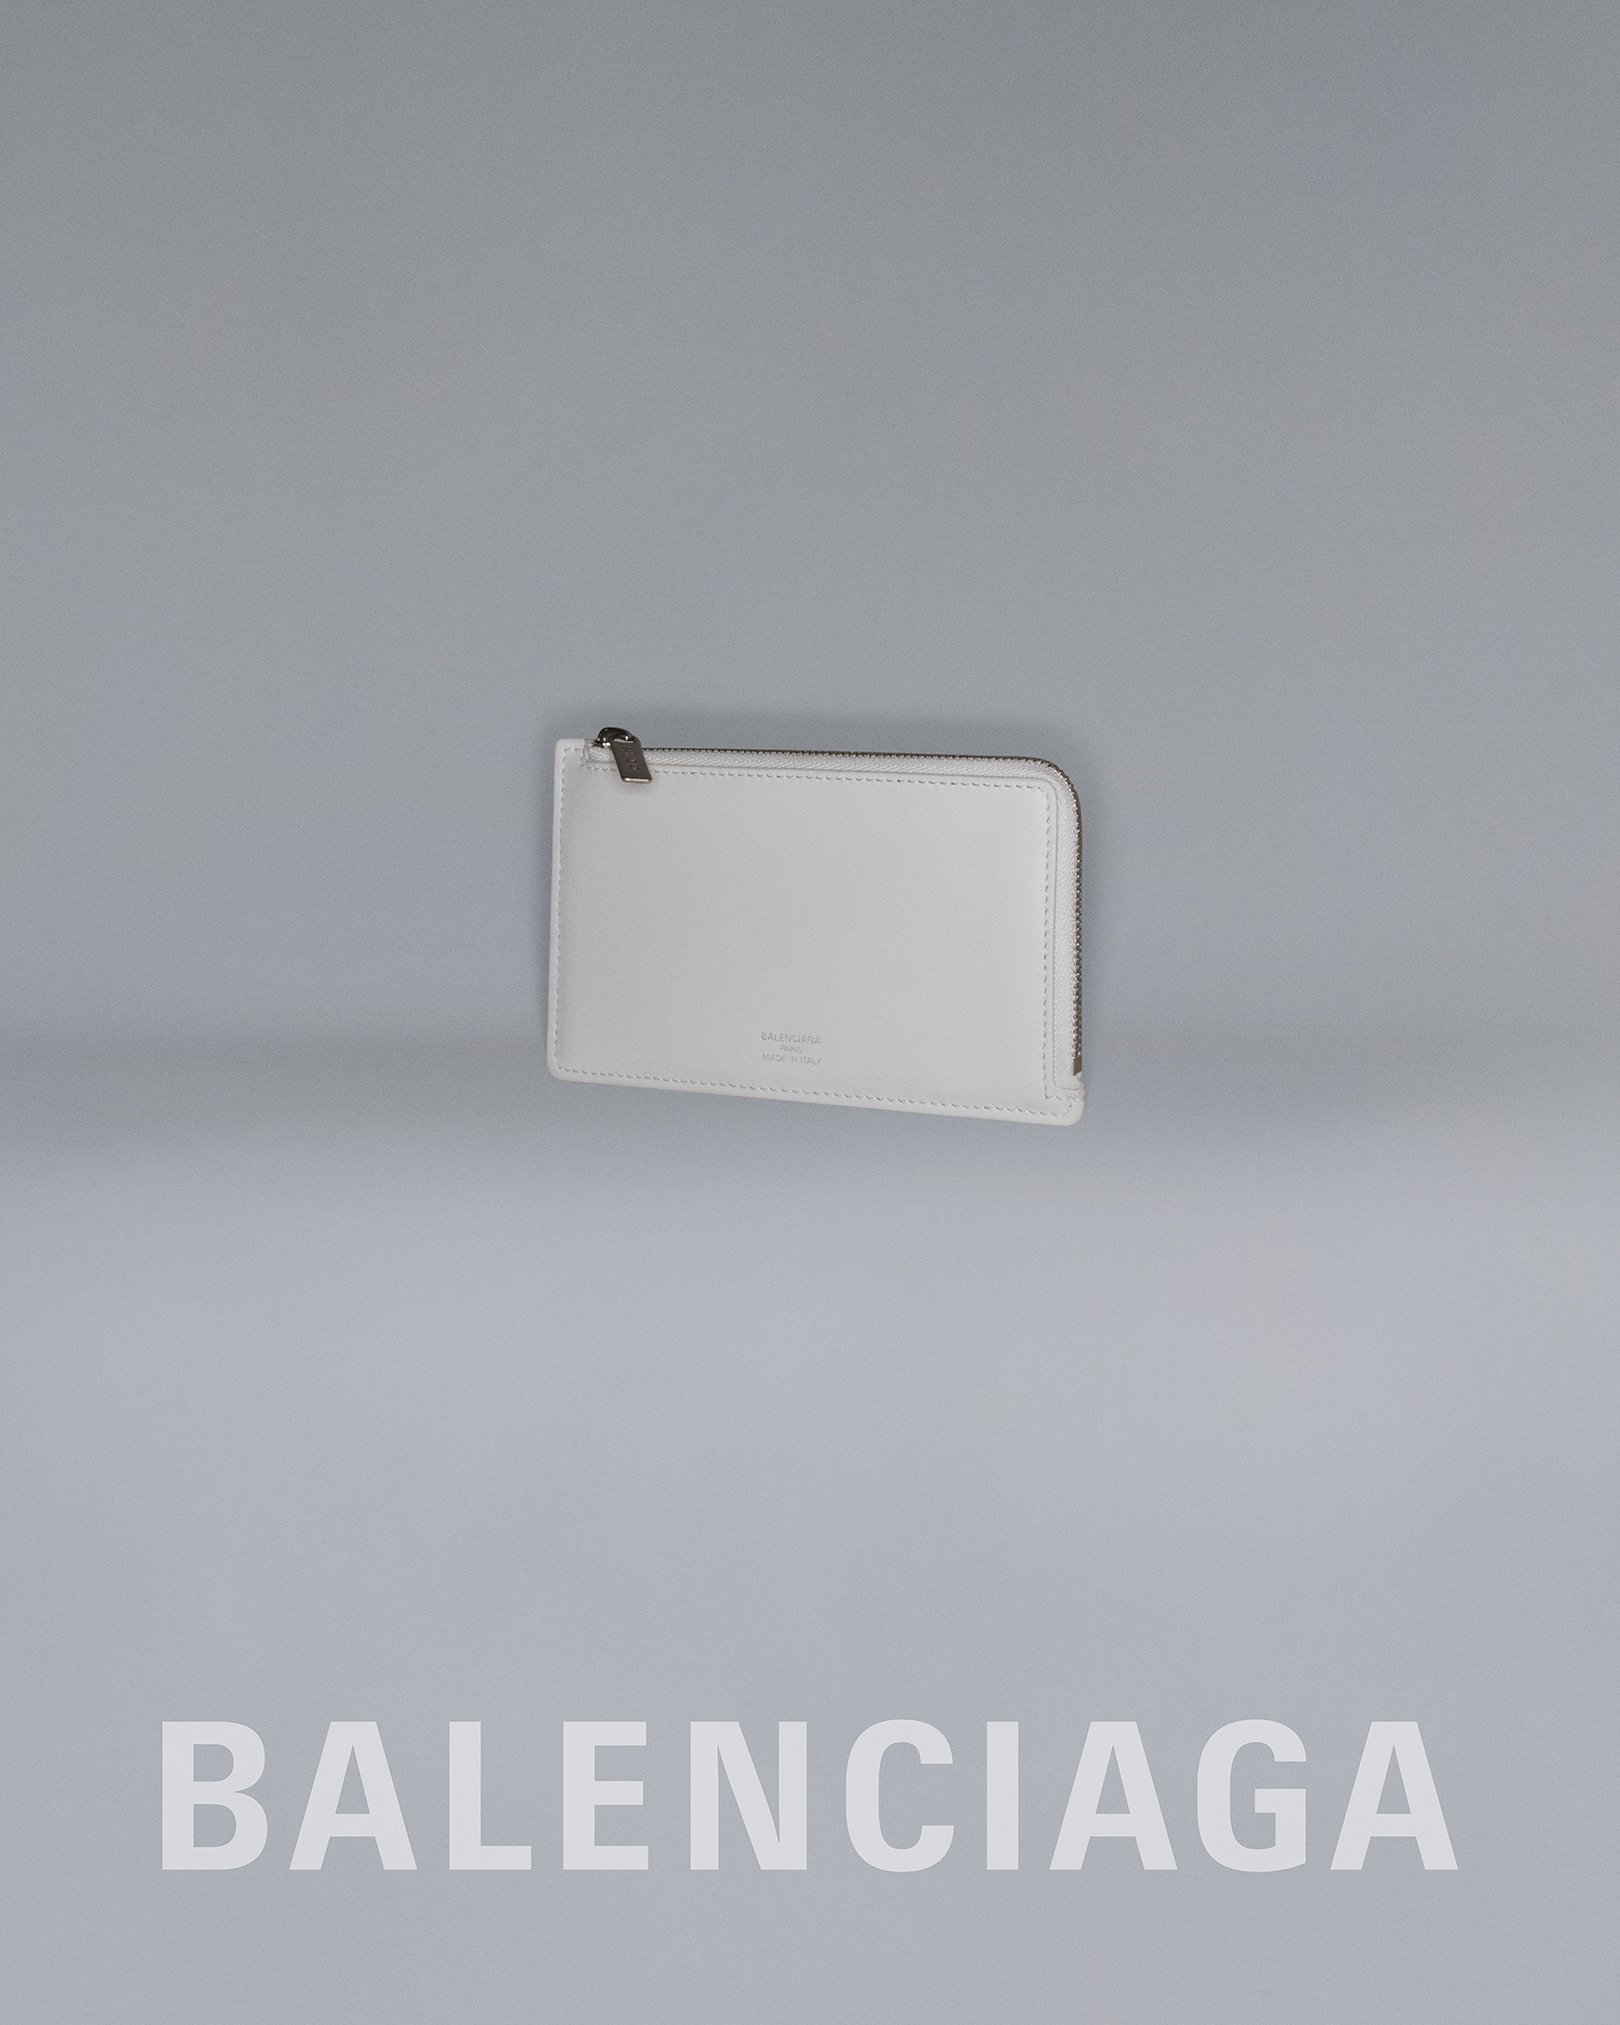 BALENCIAGA GARDE-ROBE 23 STILL LIFE IMAGE LOGO ENVELOPE 3.jpg